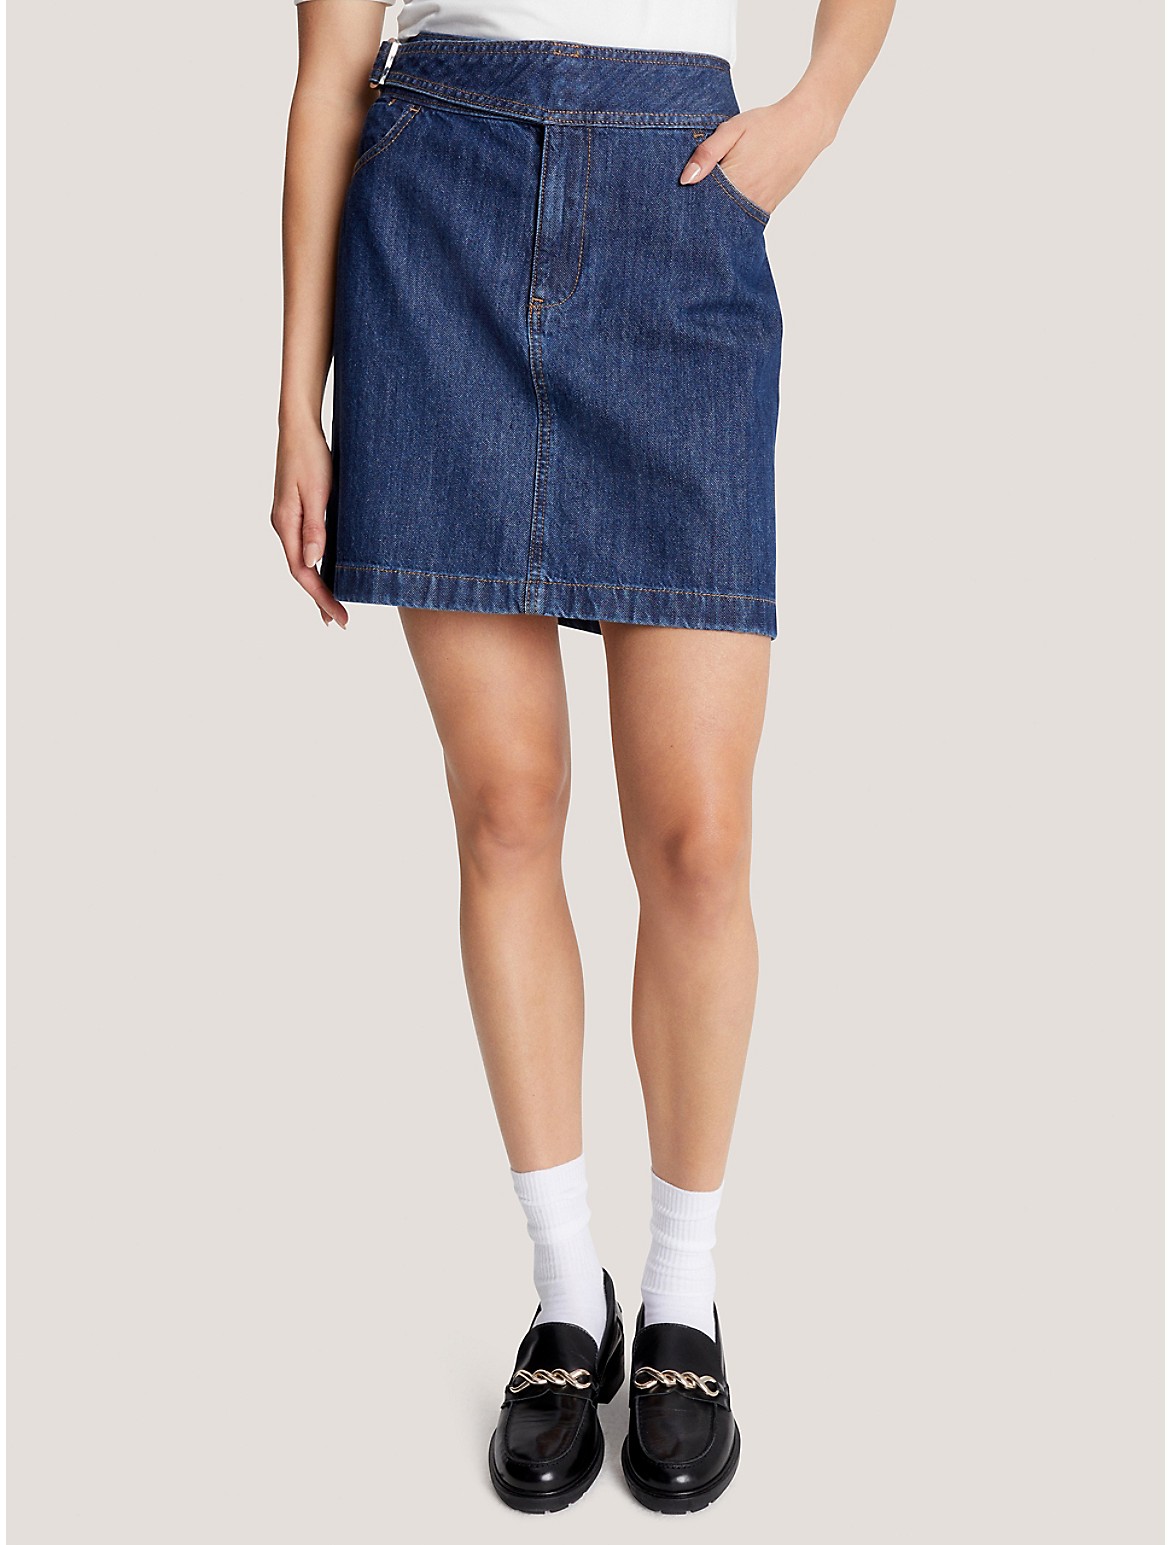 Tommy Hilfiger Women's High-Waist Belted Denim Mini Skirt